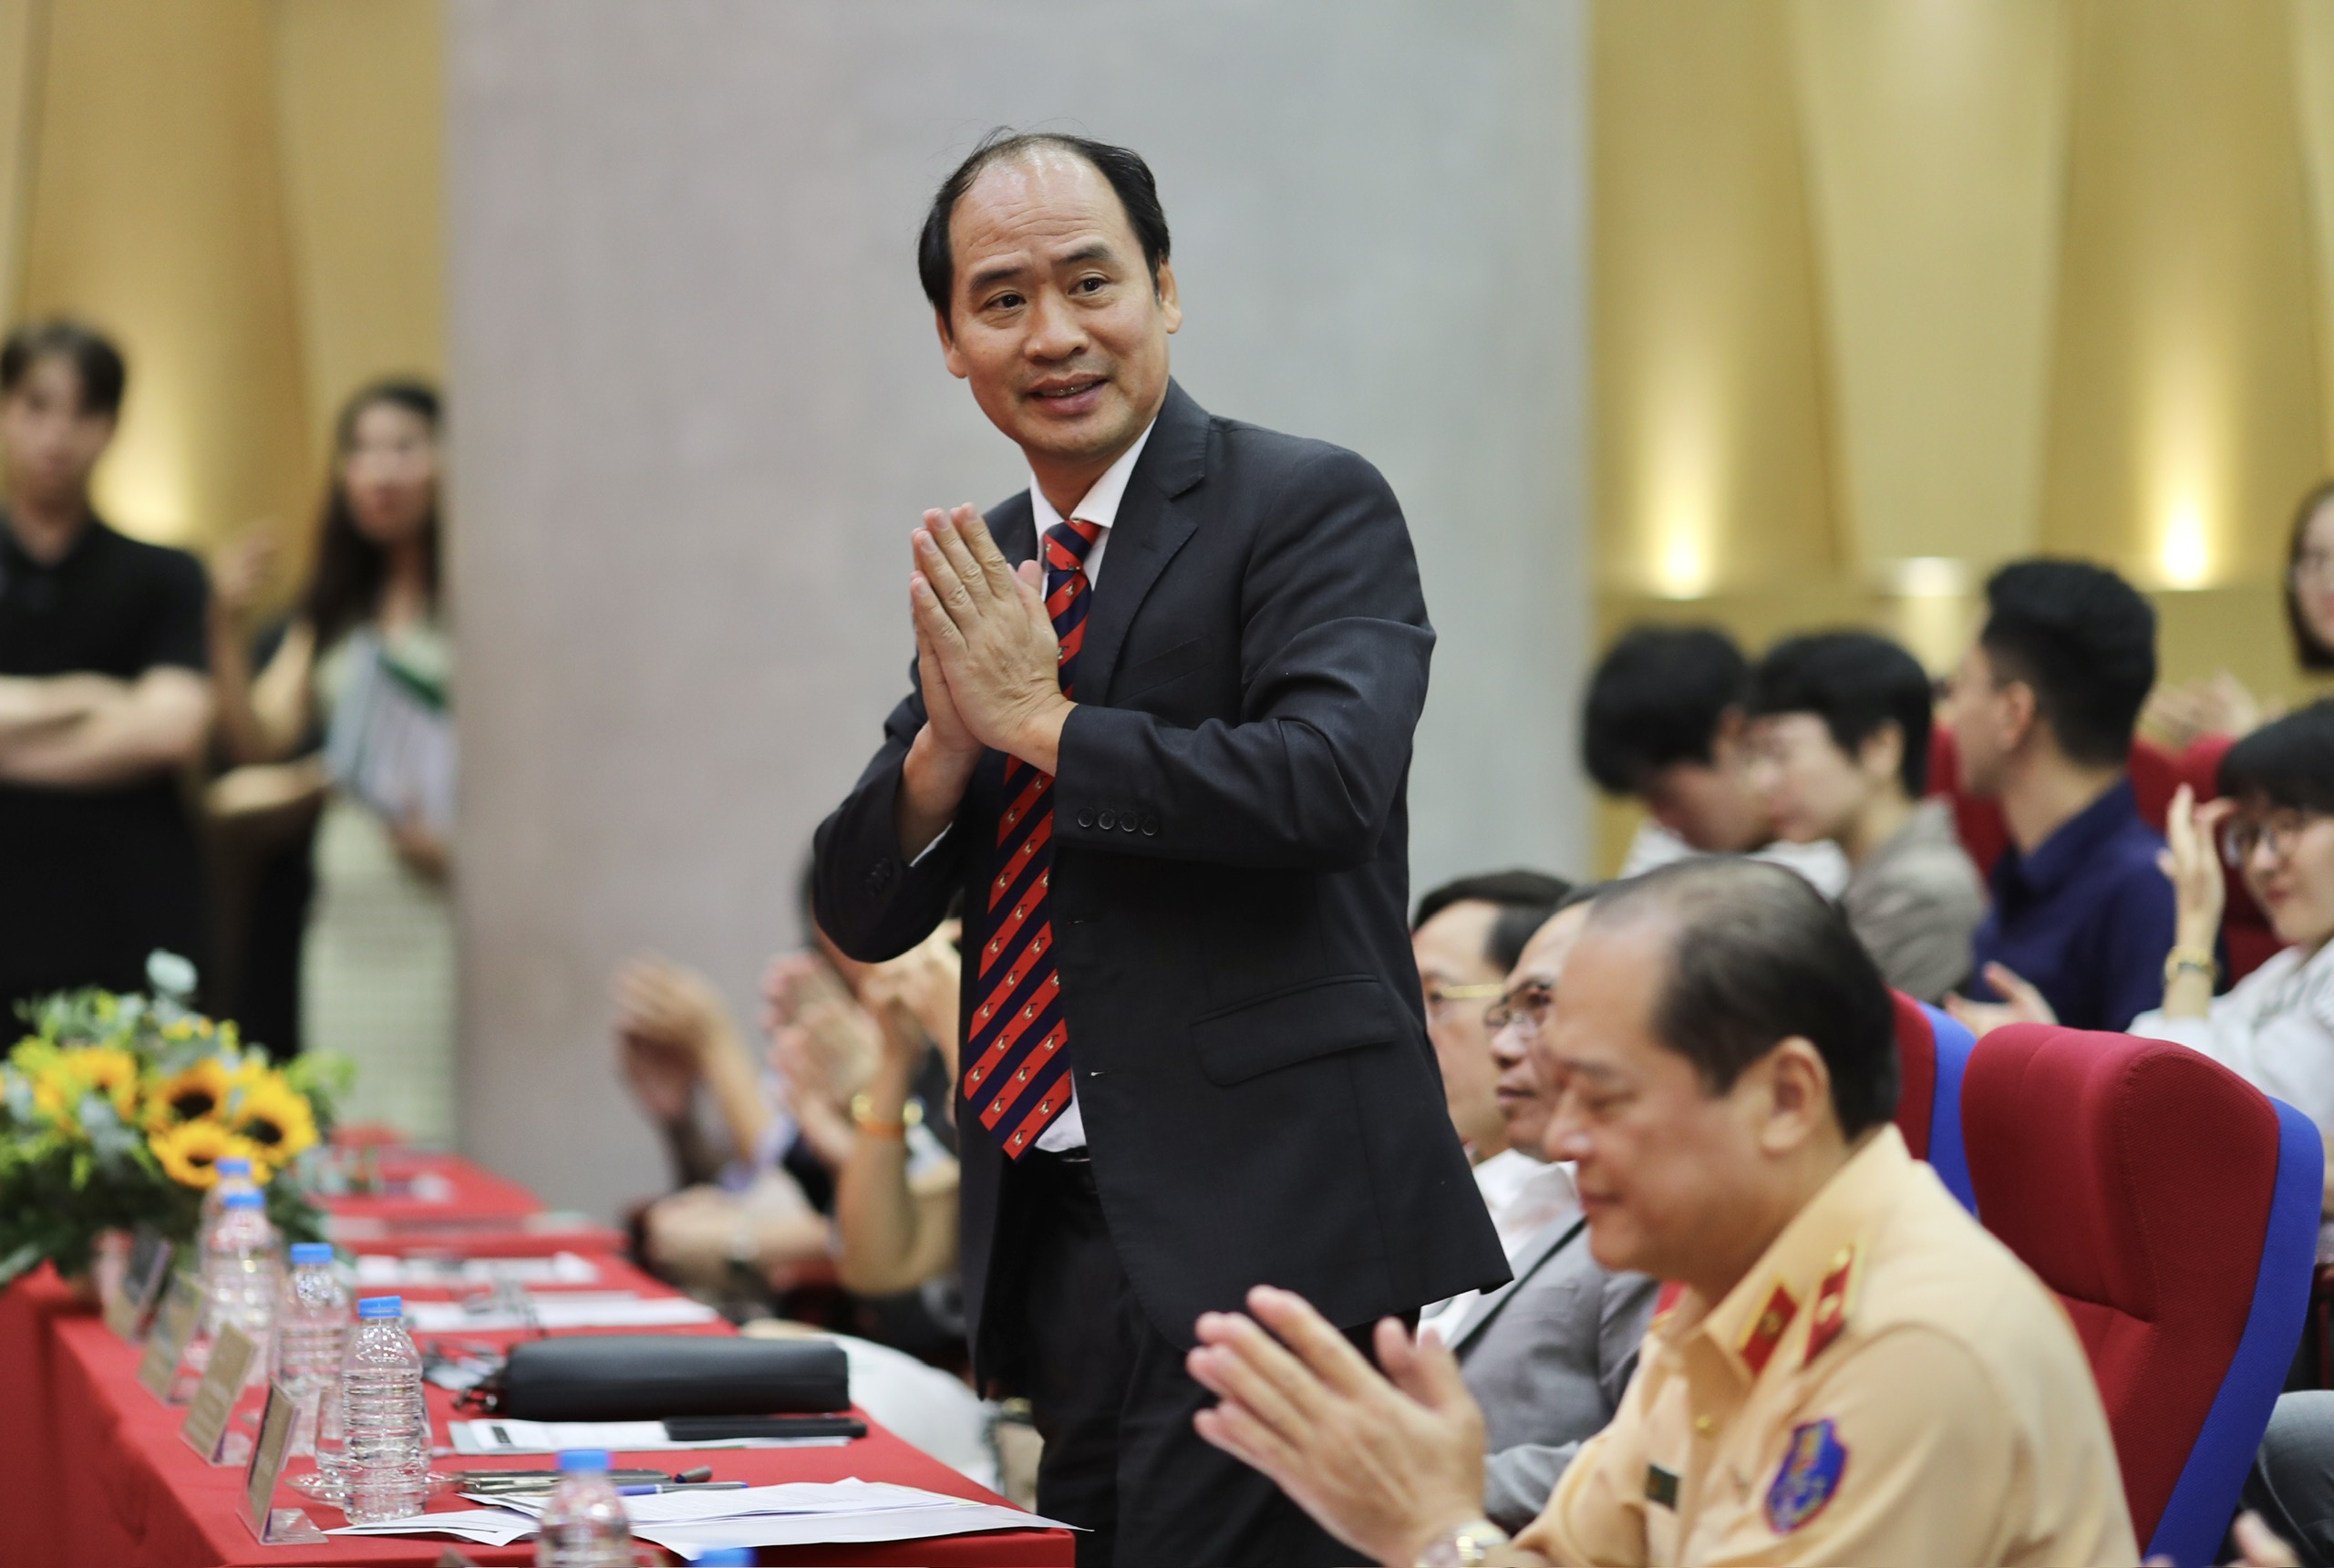 Thứ trưởng Bộ LĐ-TB&XH Nguyễn Văn Hồi tham gia tổng kết chương trình sáng kiến An toàn giao thông Việt Nam năm 2022-2023. Ảnh: HẢI LONG